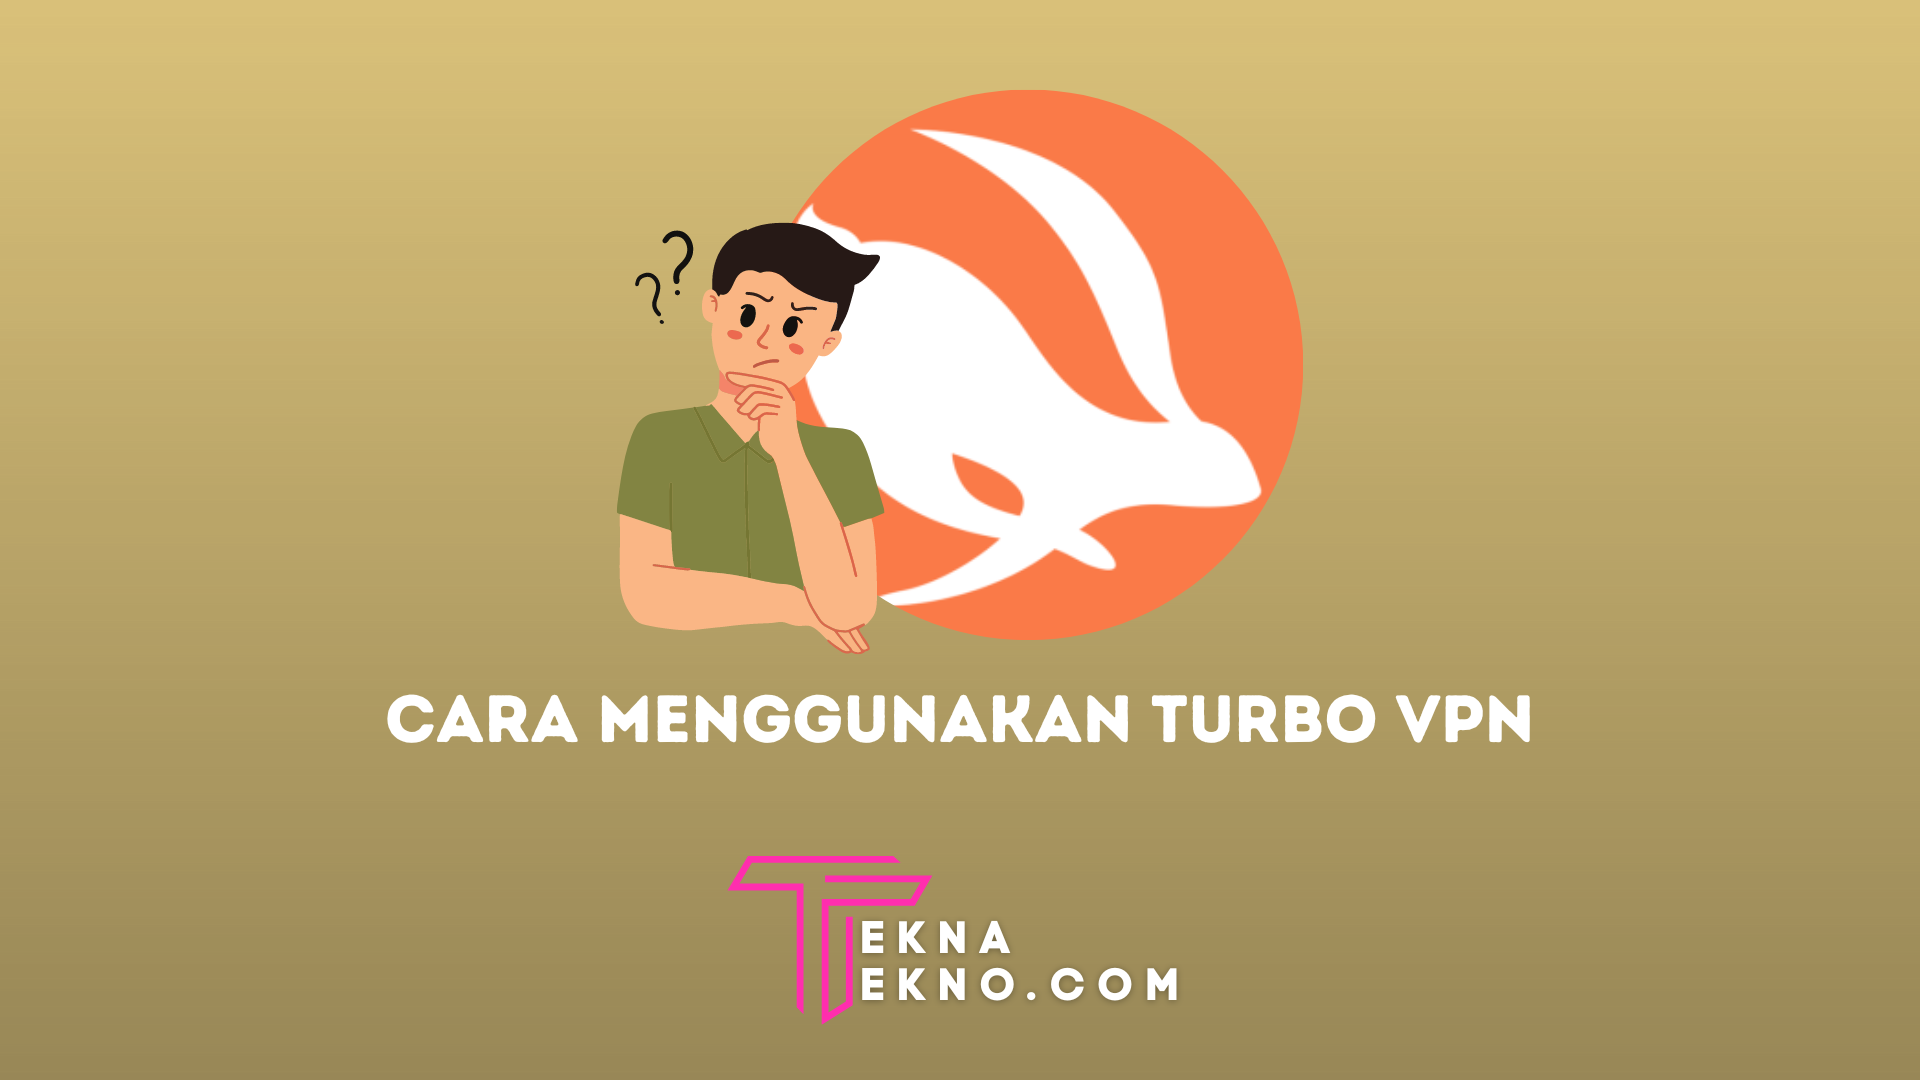 8 Cara Menggunakan Turbo VPN di Android iOS dan PC, Akses Internet Tanpa Batas